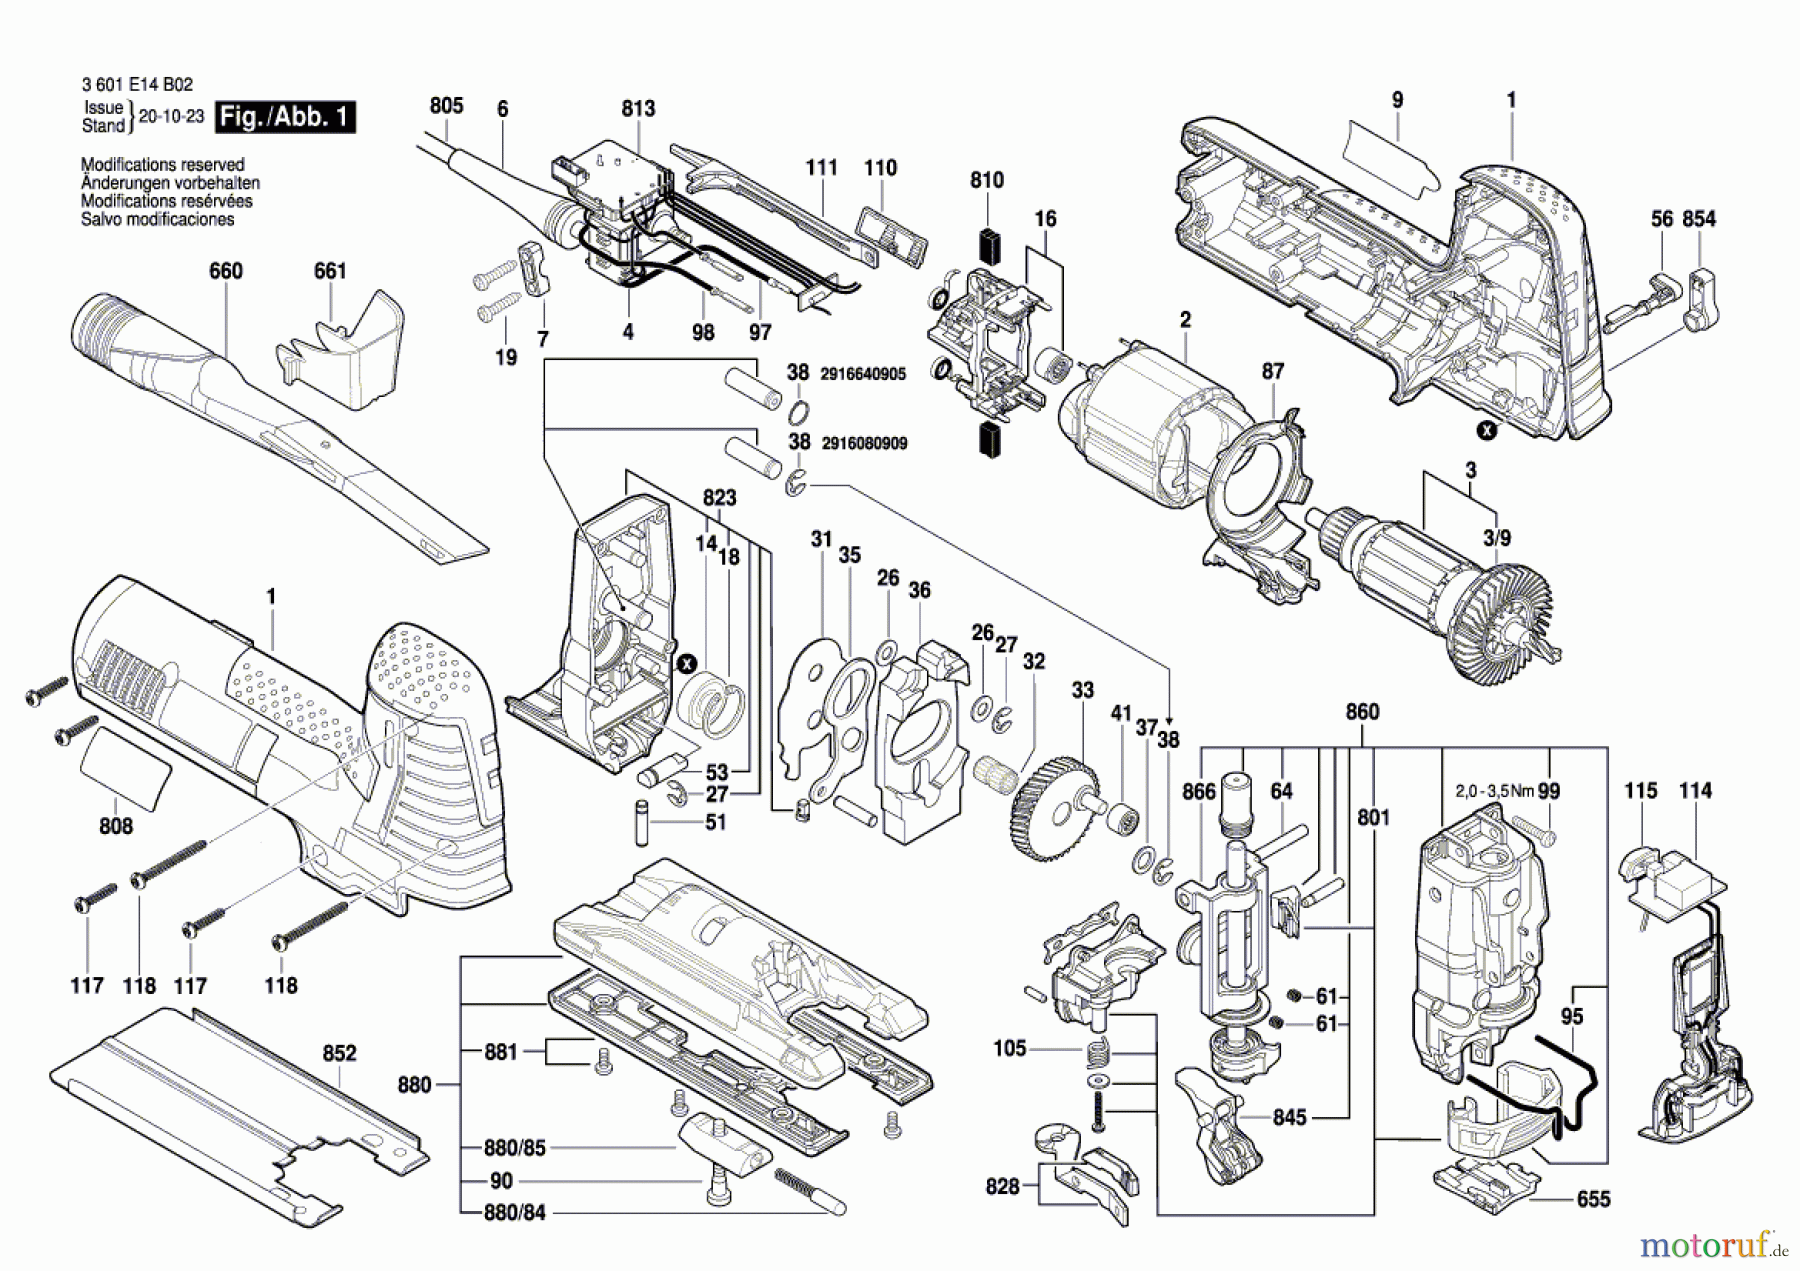  Bosch Werkzeug Pendelstichsäge ST 160 E Seite 1